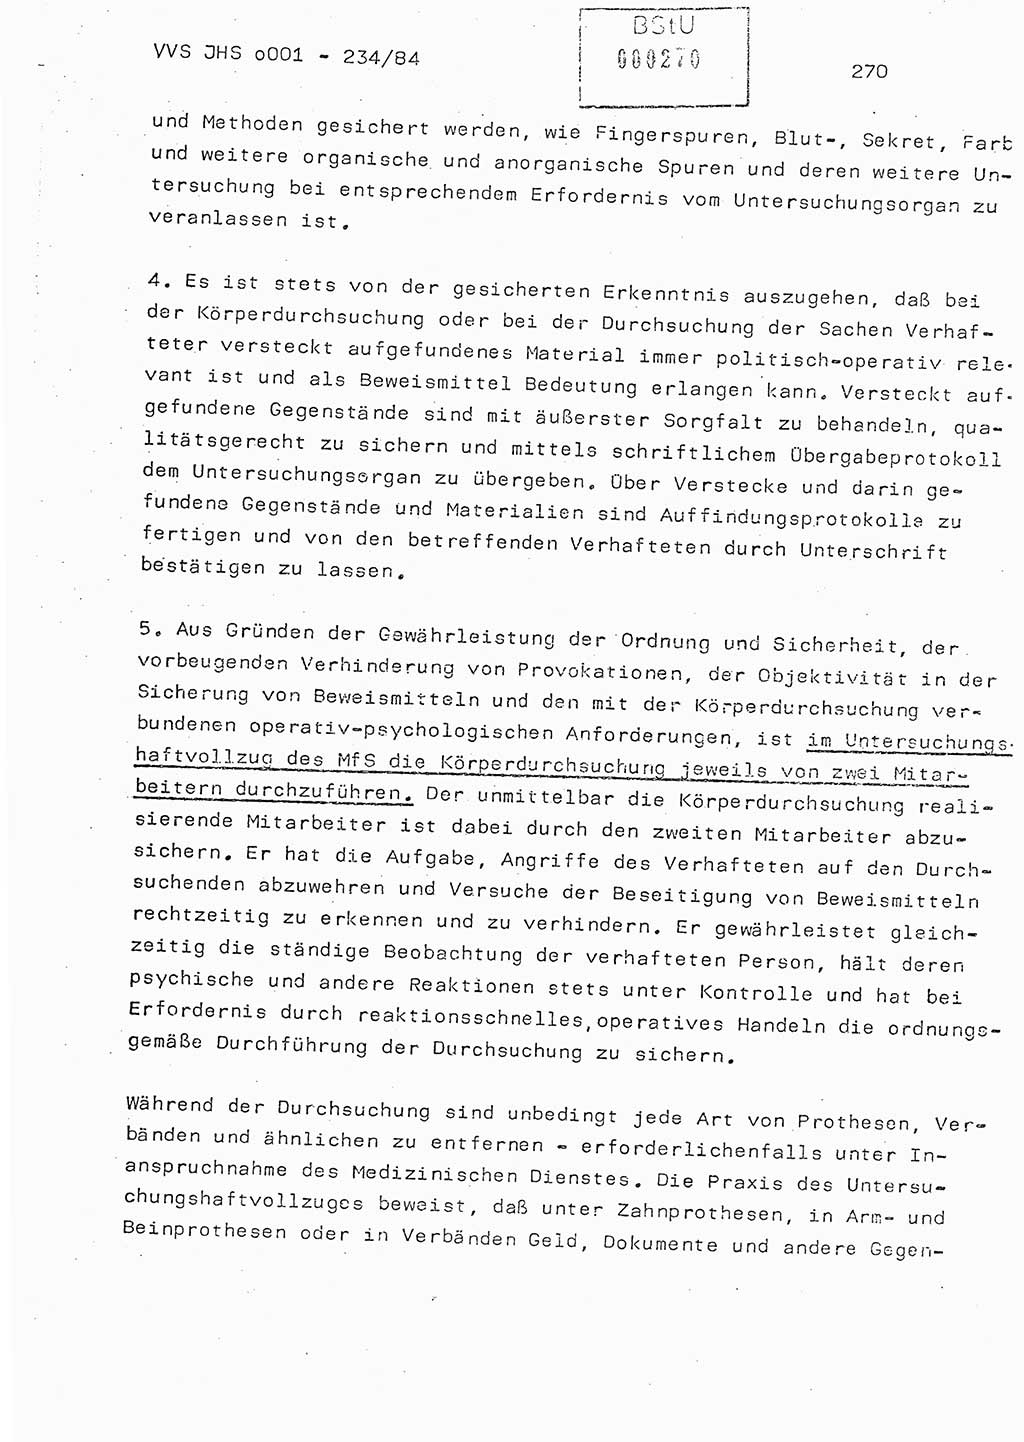 Dissertation Oberst Siegfried Rataizick (Abt. ⅩⅣ), Oberstleutnant Volkmar Heinz (Abt. ⅩⅣ), Oberstleutnant Werner Stein (HA Ⅸ), Hauptmann Heinz Conrad (JHS), Ministerium für Staatssicherheit (MfS) [Deutsche Demokratische Republik (DDR)], Juristische Hochschule (JHS), Vertrauliche Verschlußsache (VVS) o001-234/84, Potsdam 1984, Seite 270 (Diss. MfS DDR JHS VVS o001-234/84 1984, S. 270)